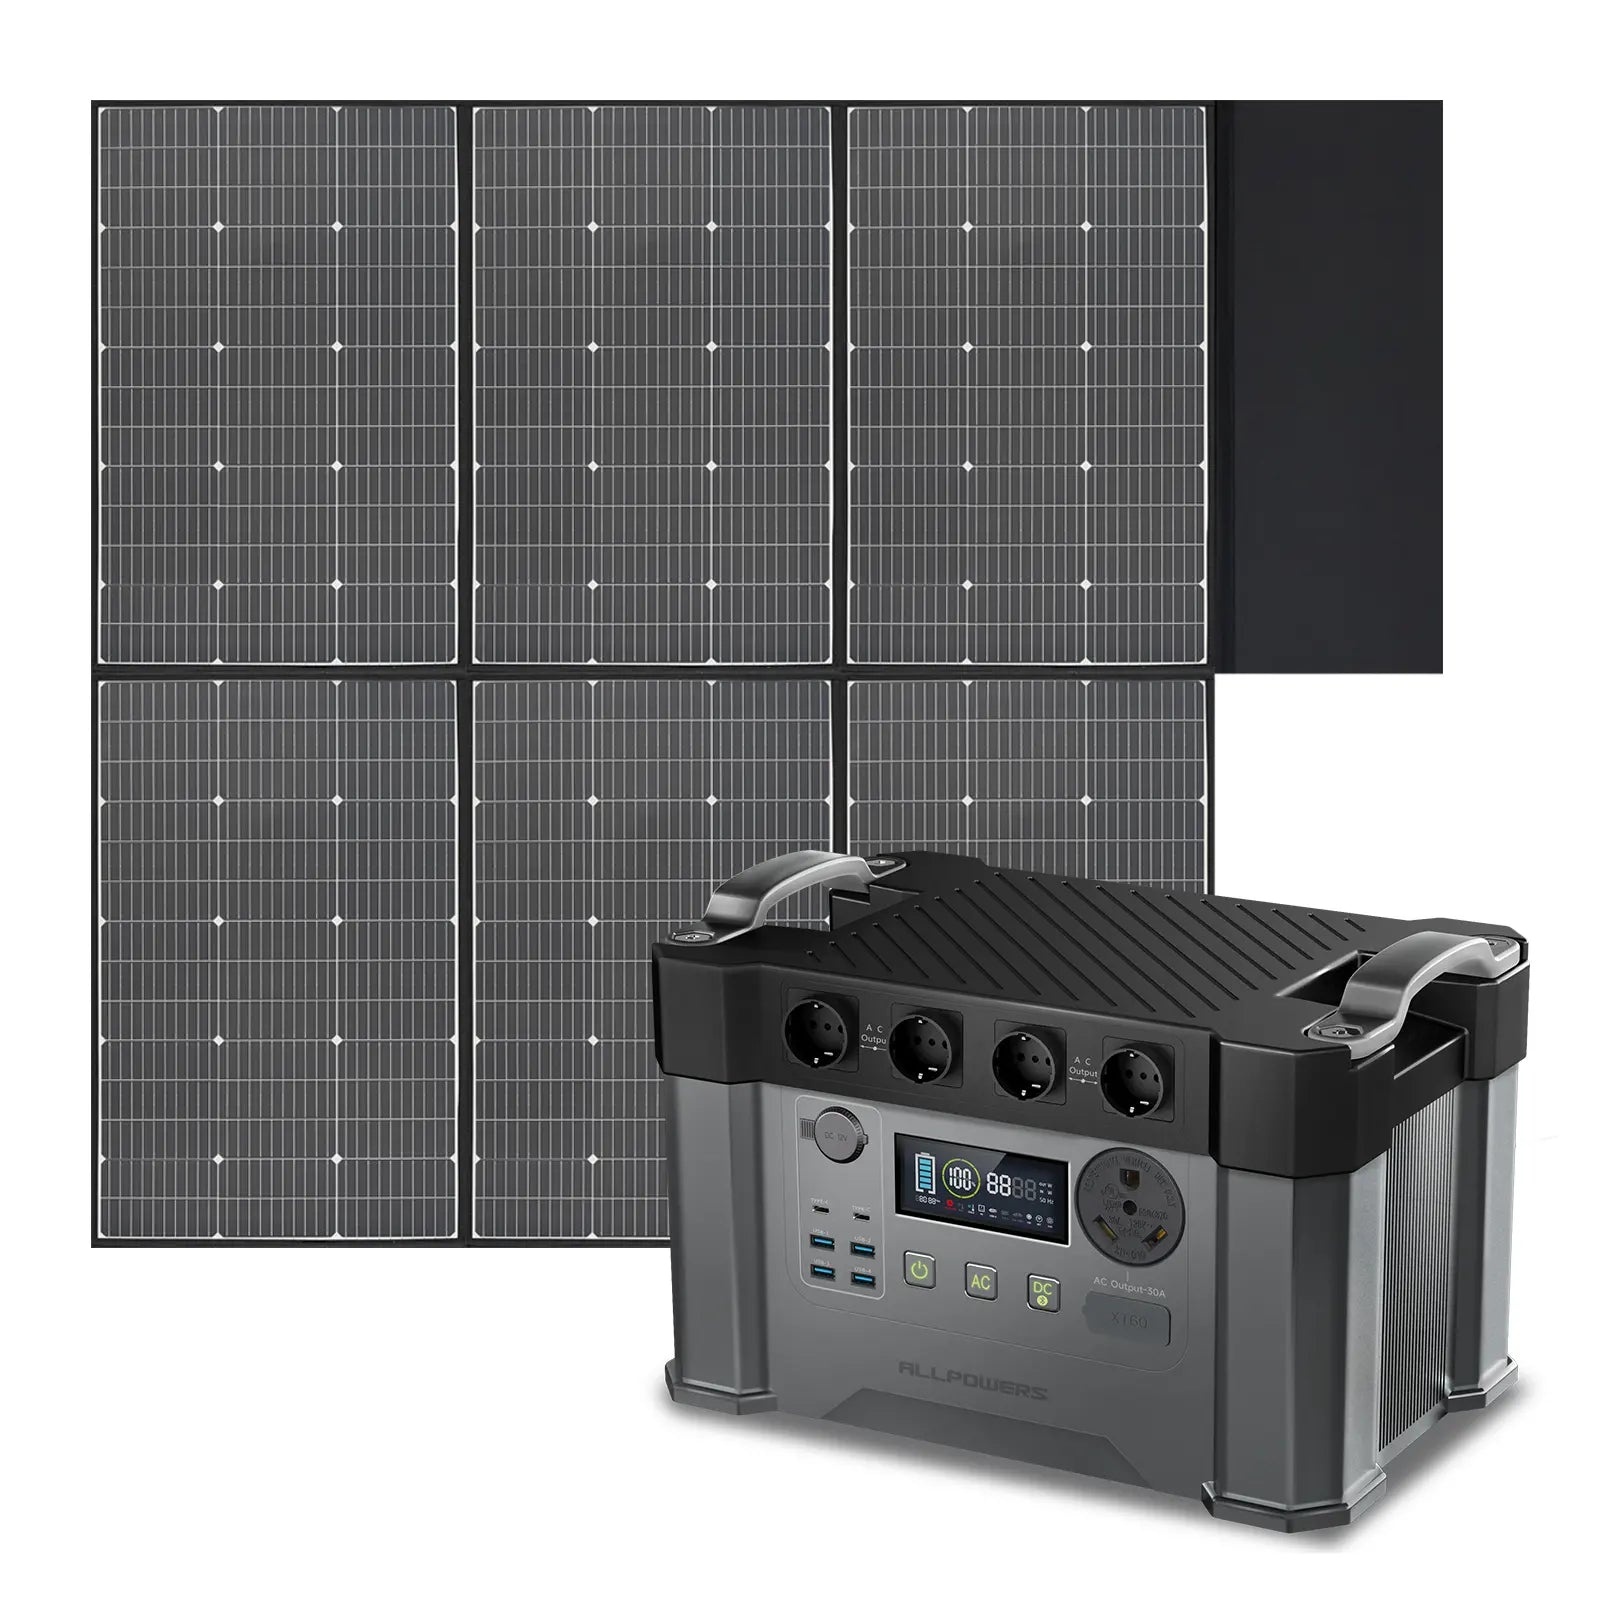 ALLPOWERS Kit Generatore Solare 2400W (S2000 Pro + SP039 600W Pannello Solare)